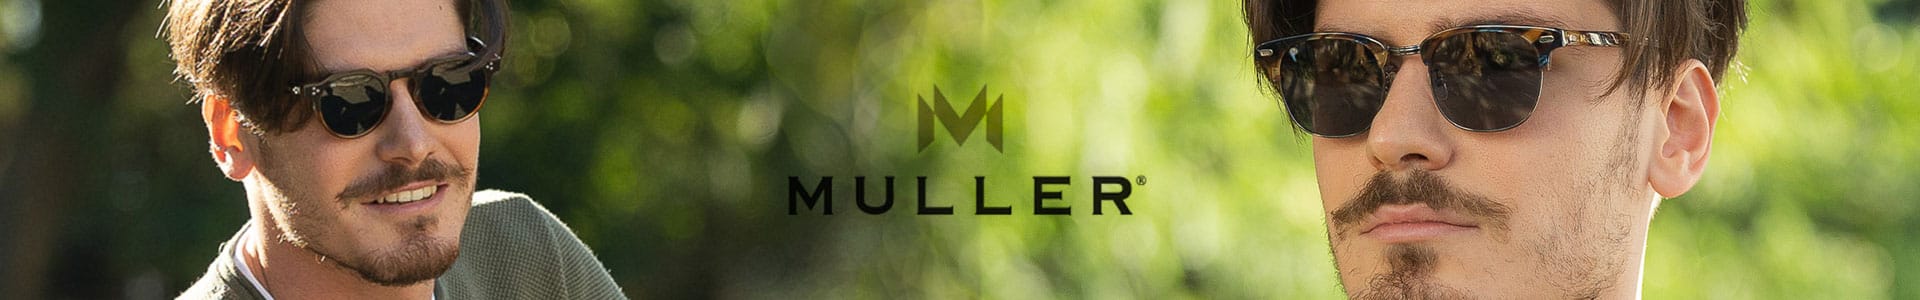 Muller-Web-Banner.jpg (69 KB)